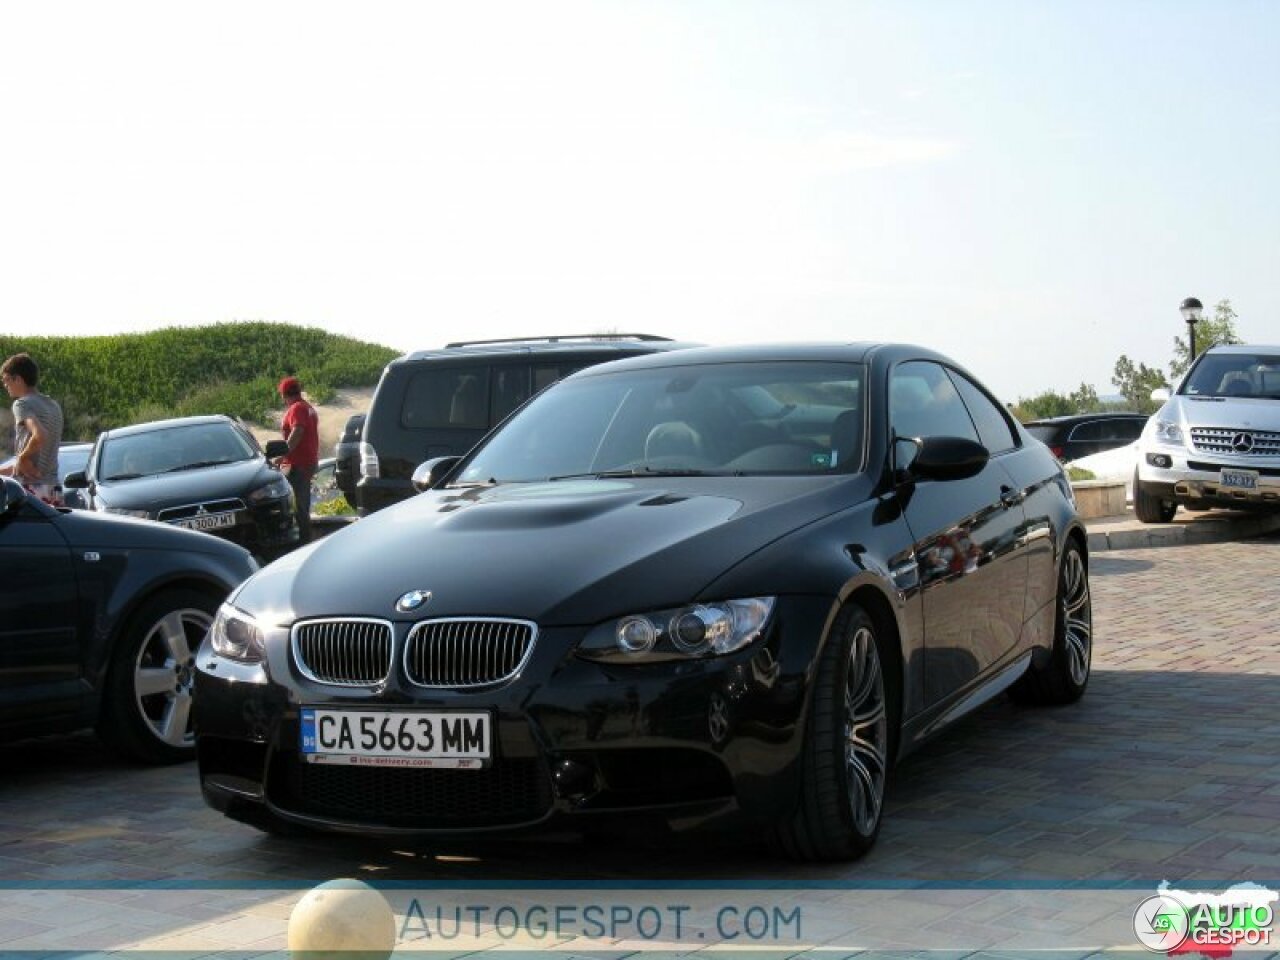 BMW M3 E92 Coupé Edition - 25-08-2021 21:55 - Autogespot